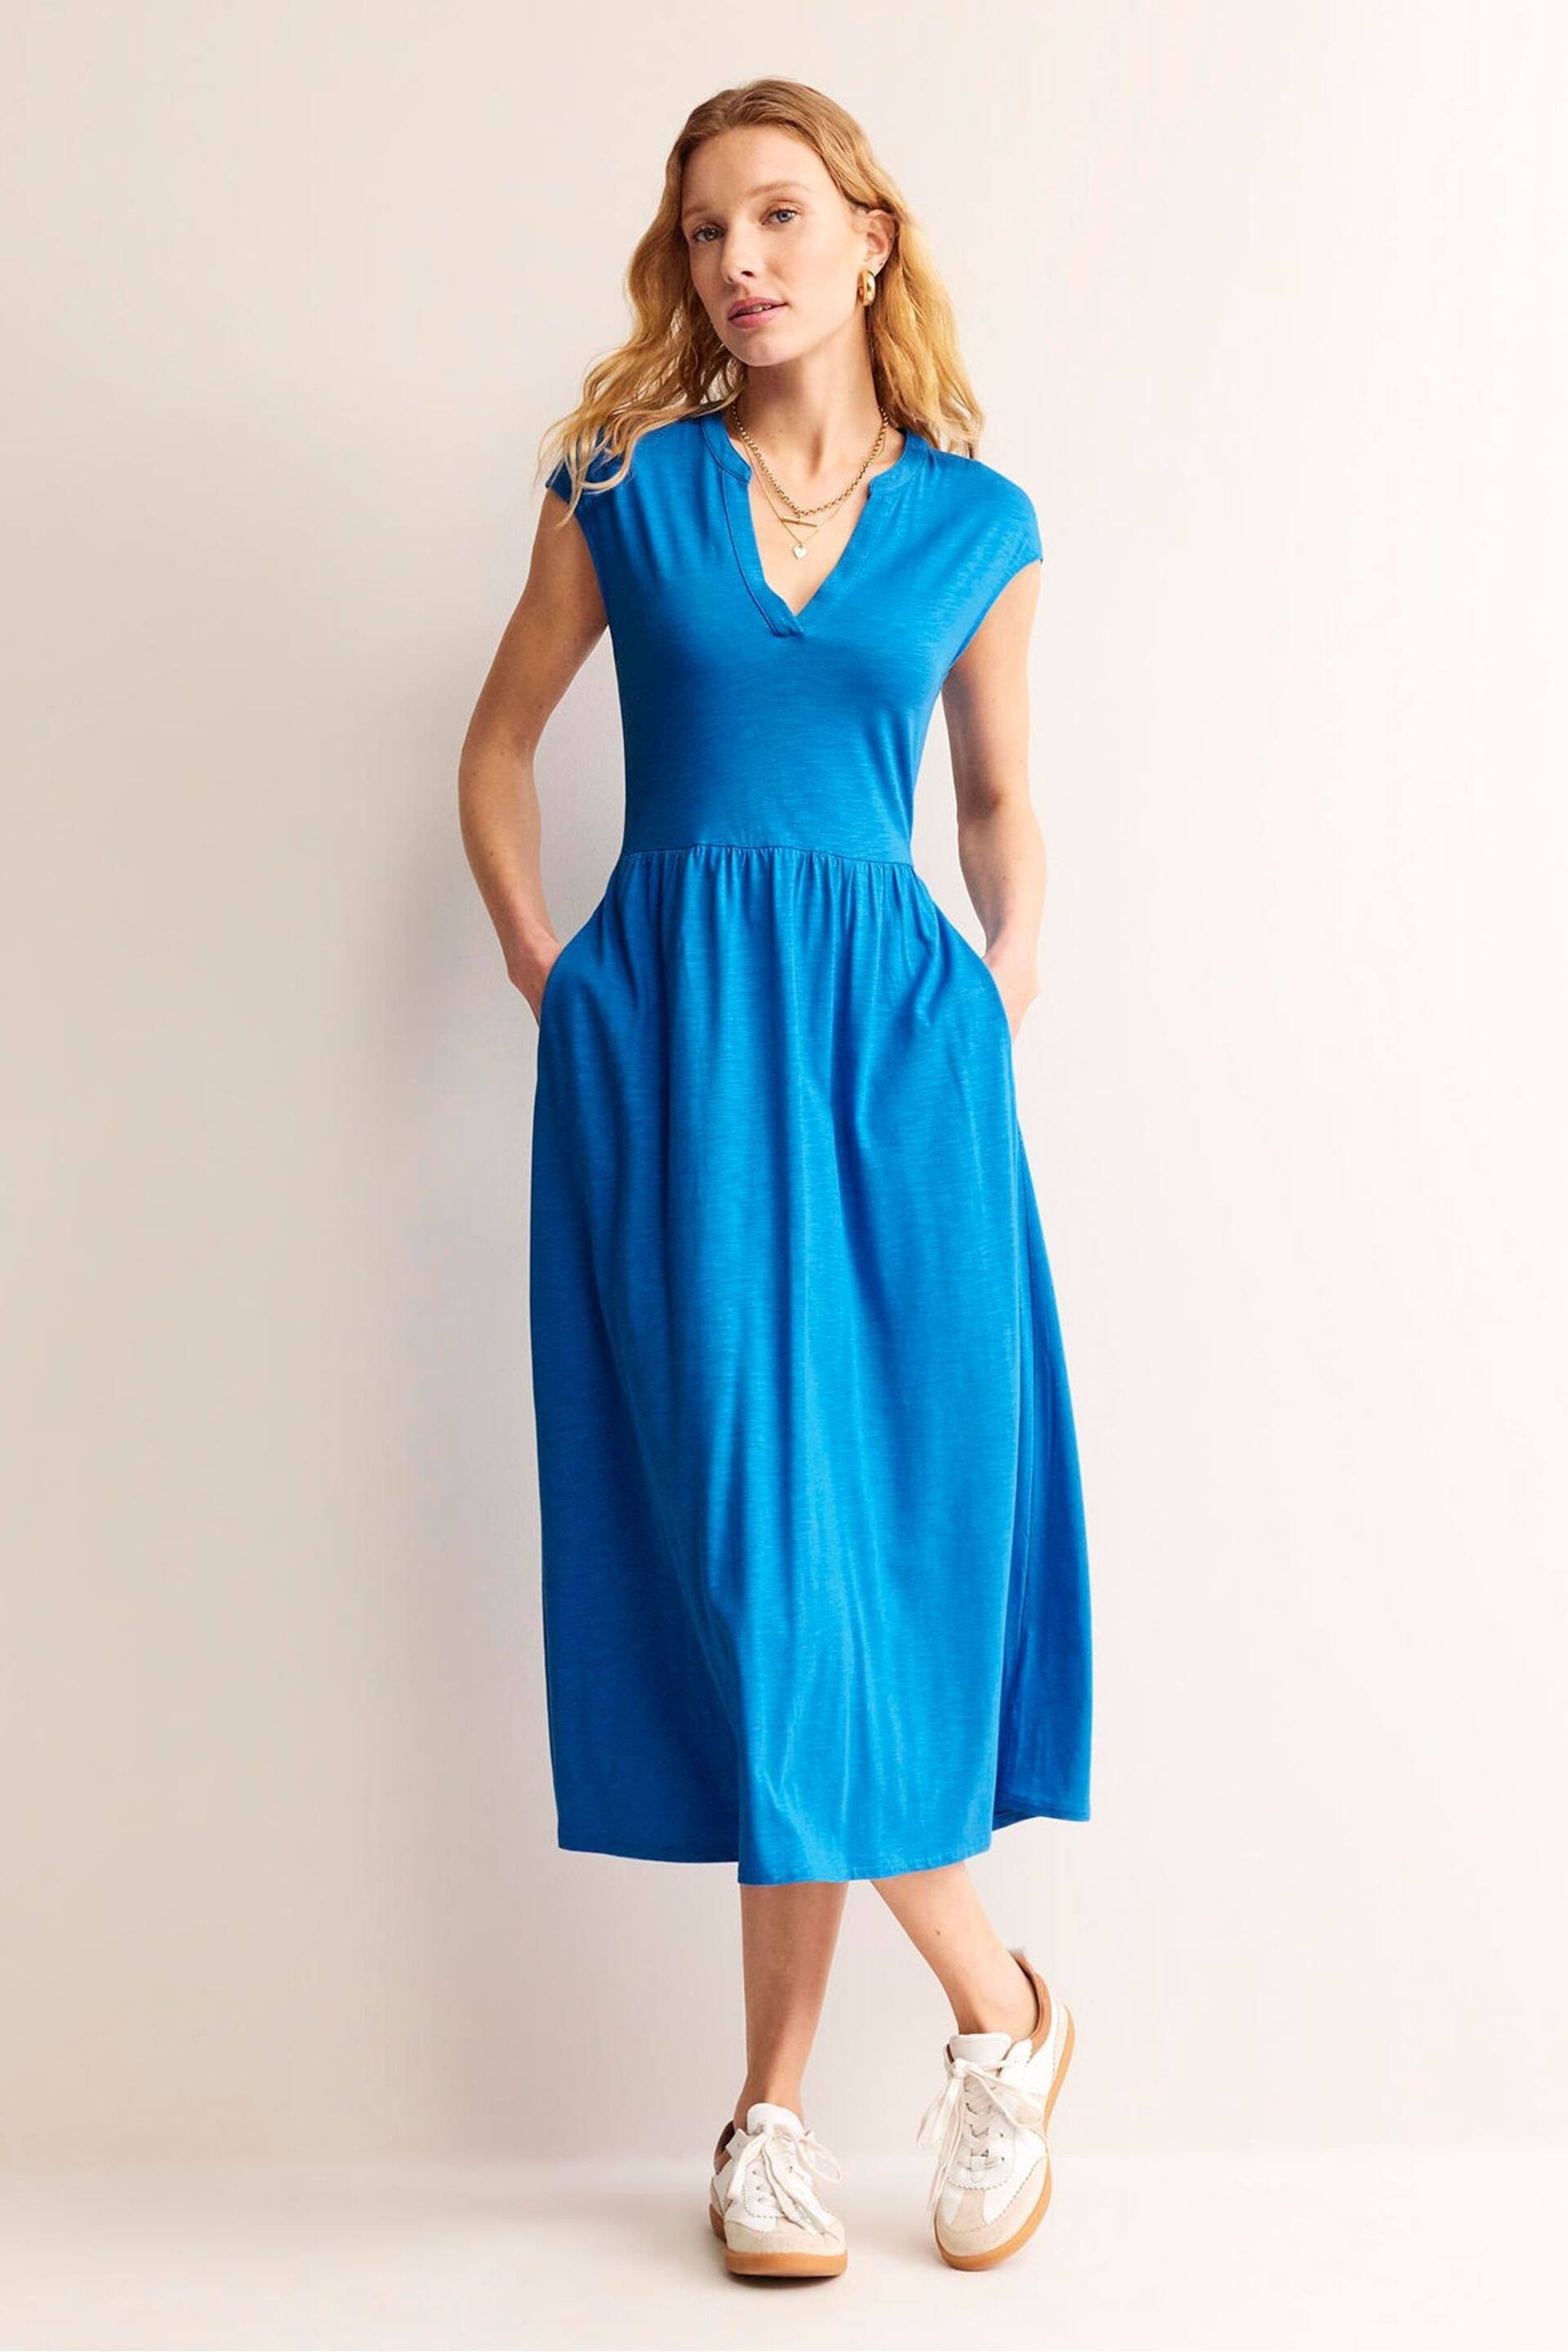 Boden Blue Chloe Notch Jersey Midi Dress - Image 5 of 6